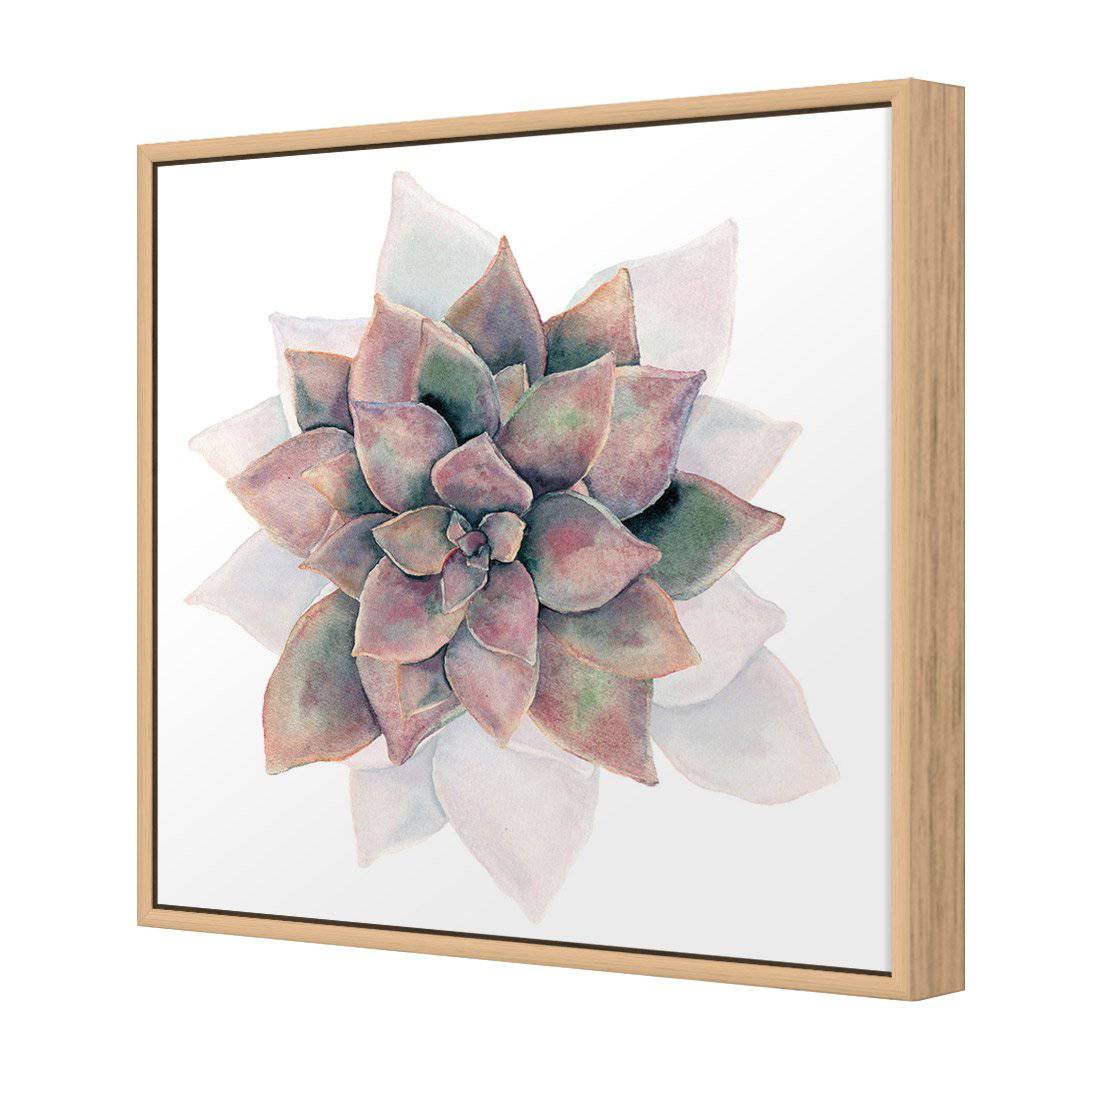 Succulent Rosette Canvas Art-Canvas-Wall Art Designs-30x30cm-Canvas - Oak Frame-Wall Art Designs